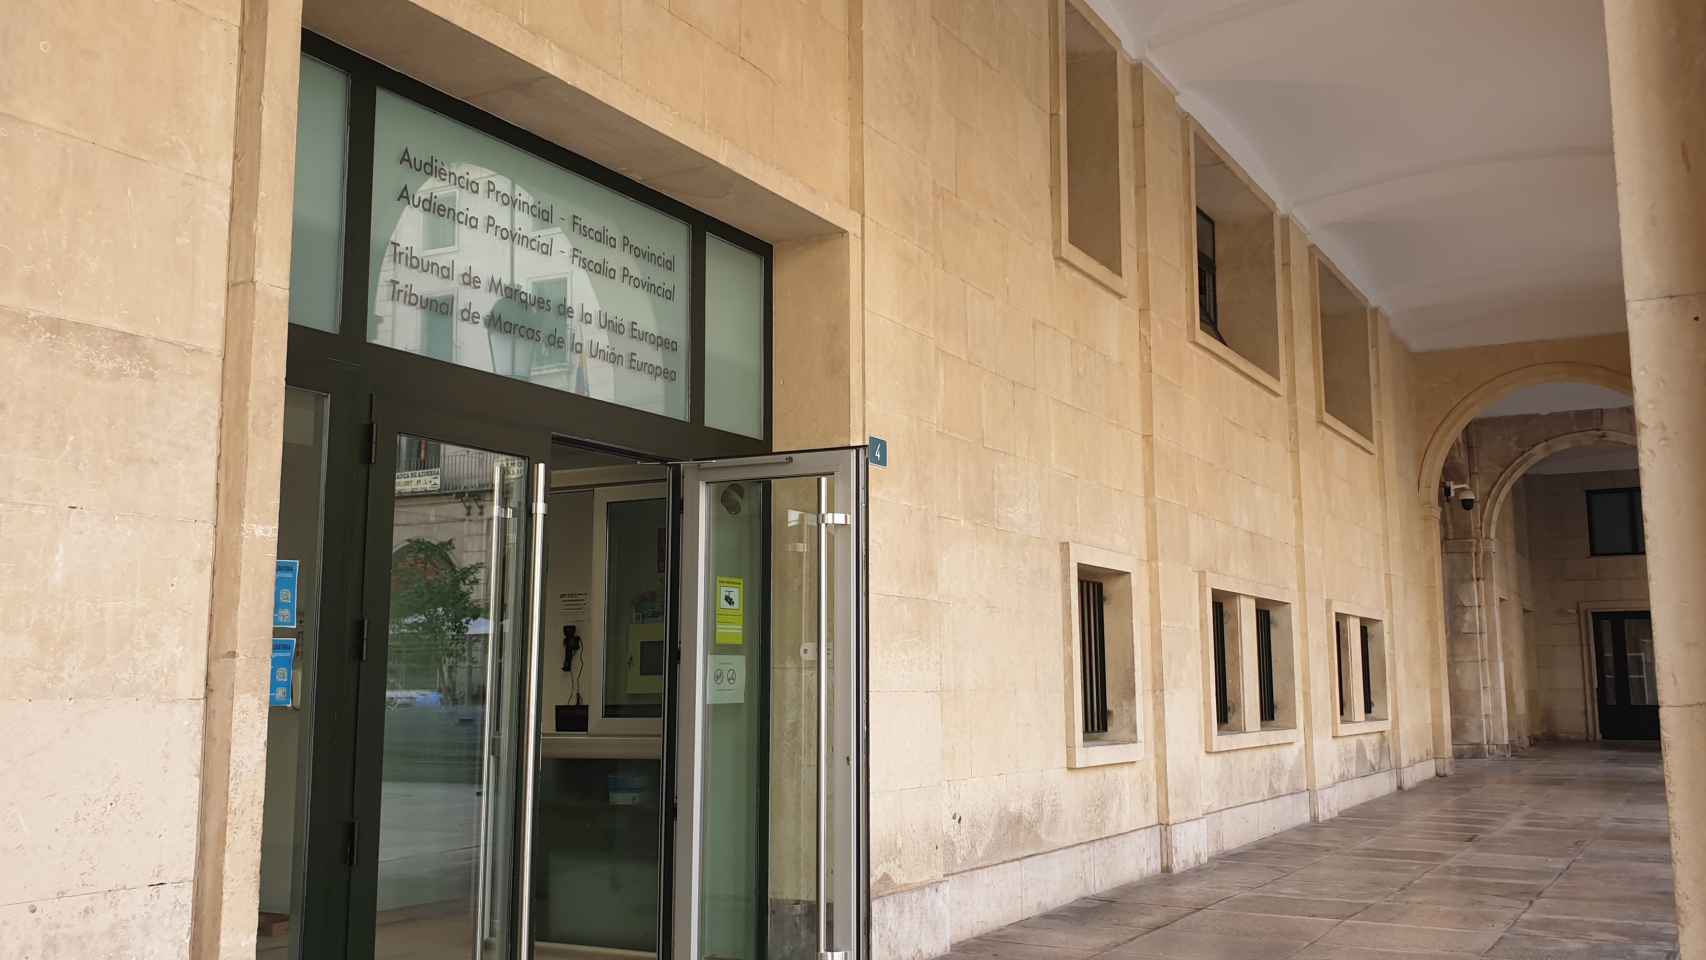 La Audiencia de Alicante, en la imagen, condena a dos años de prisión a un hombre por violación.